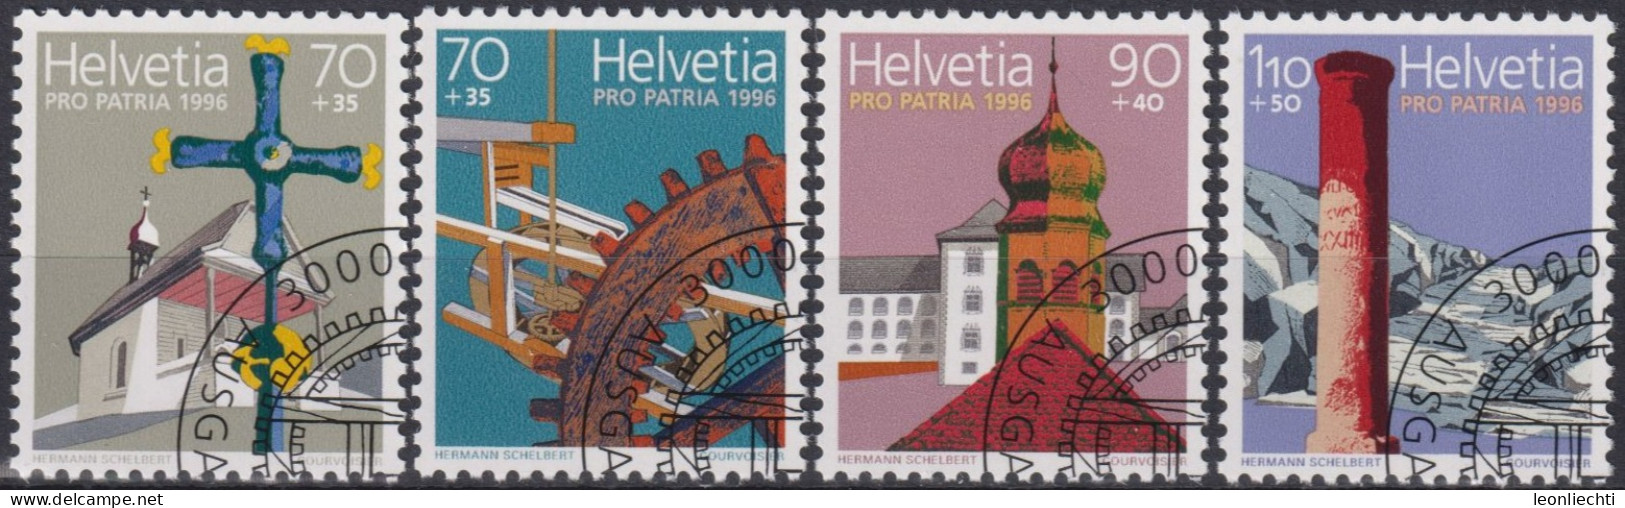 1996 Schweiz Pro Patria, Kulturrgüter U. Landschaften, ⵙ Zum:CH B251-254, Mi:CH 1577-1580, Yt: CH 1505-1508 - Used Stamps